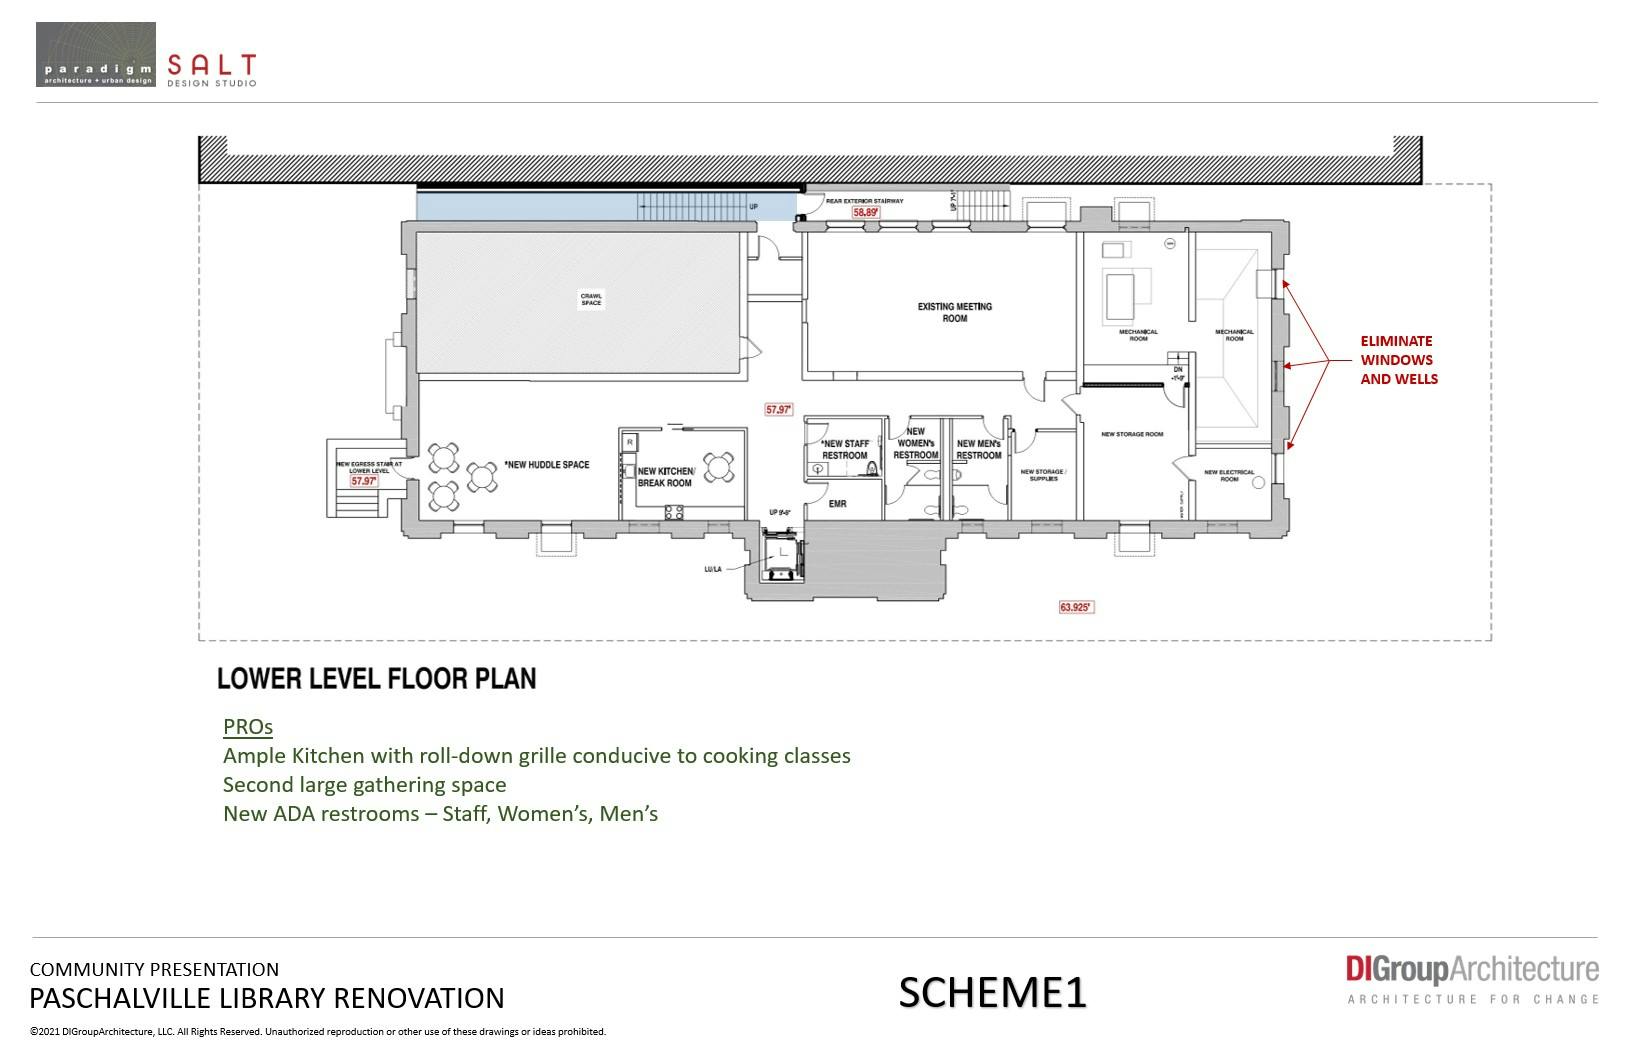 Lower Level Floor Plan - Scheme 1